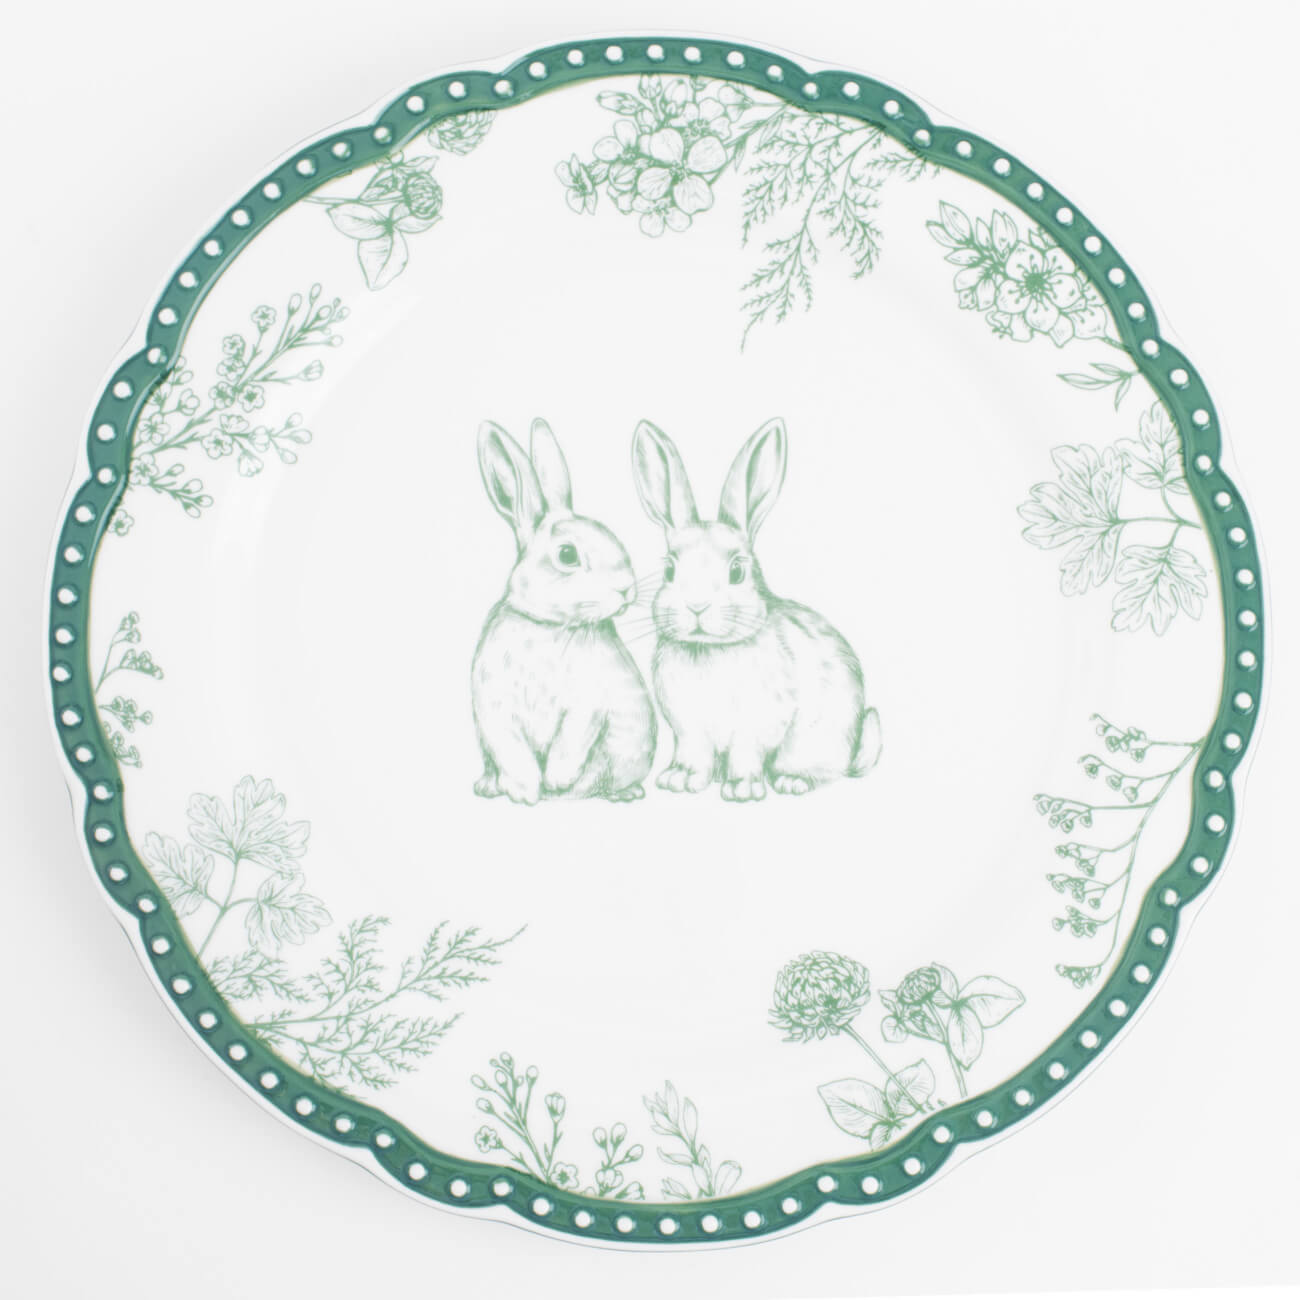 Тарелка обеденная, 27 см, керамика, бело-зеленая, Кролики и цветы, Easter blooming